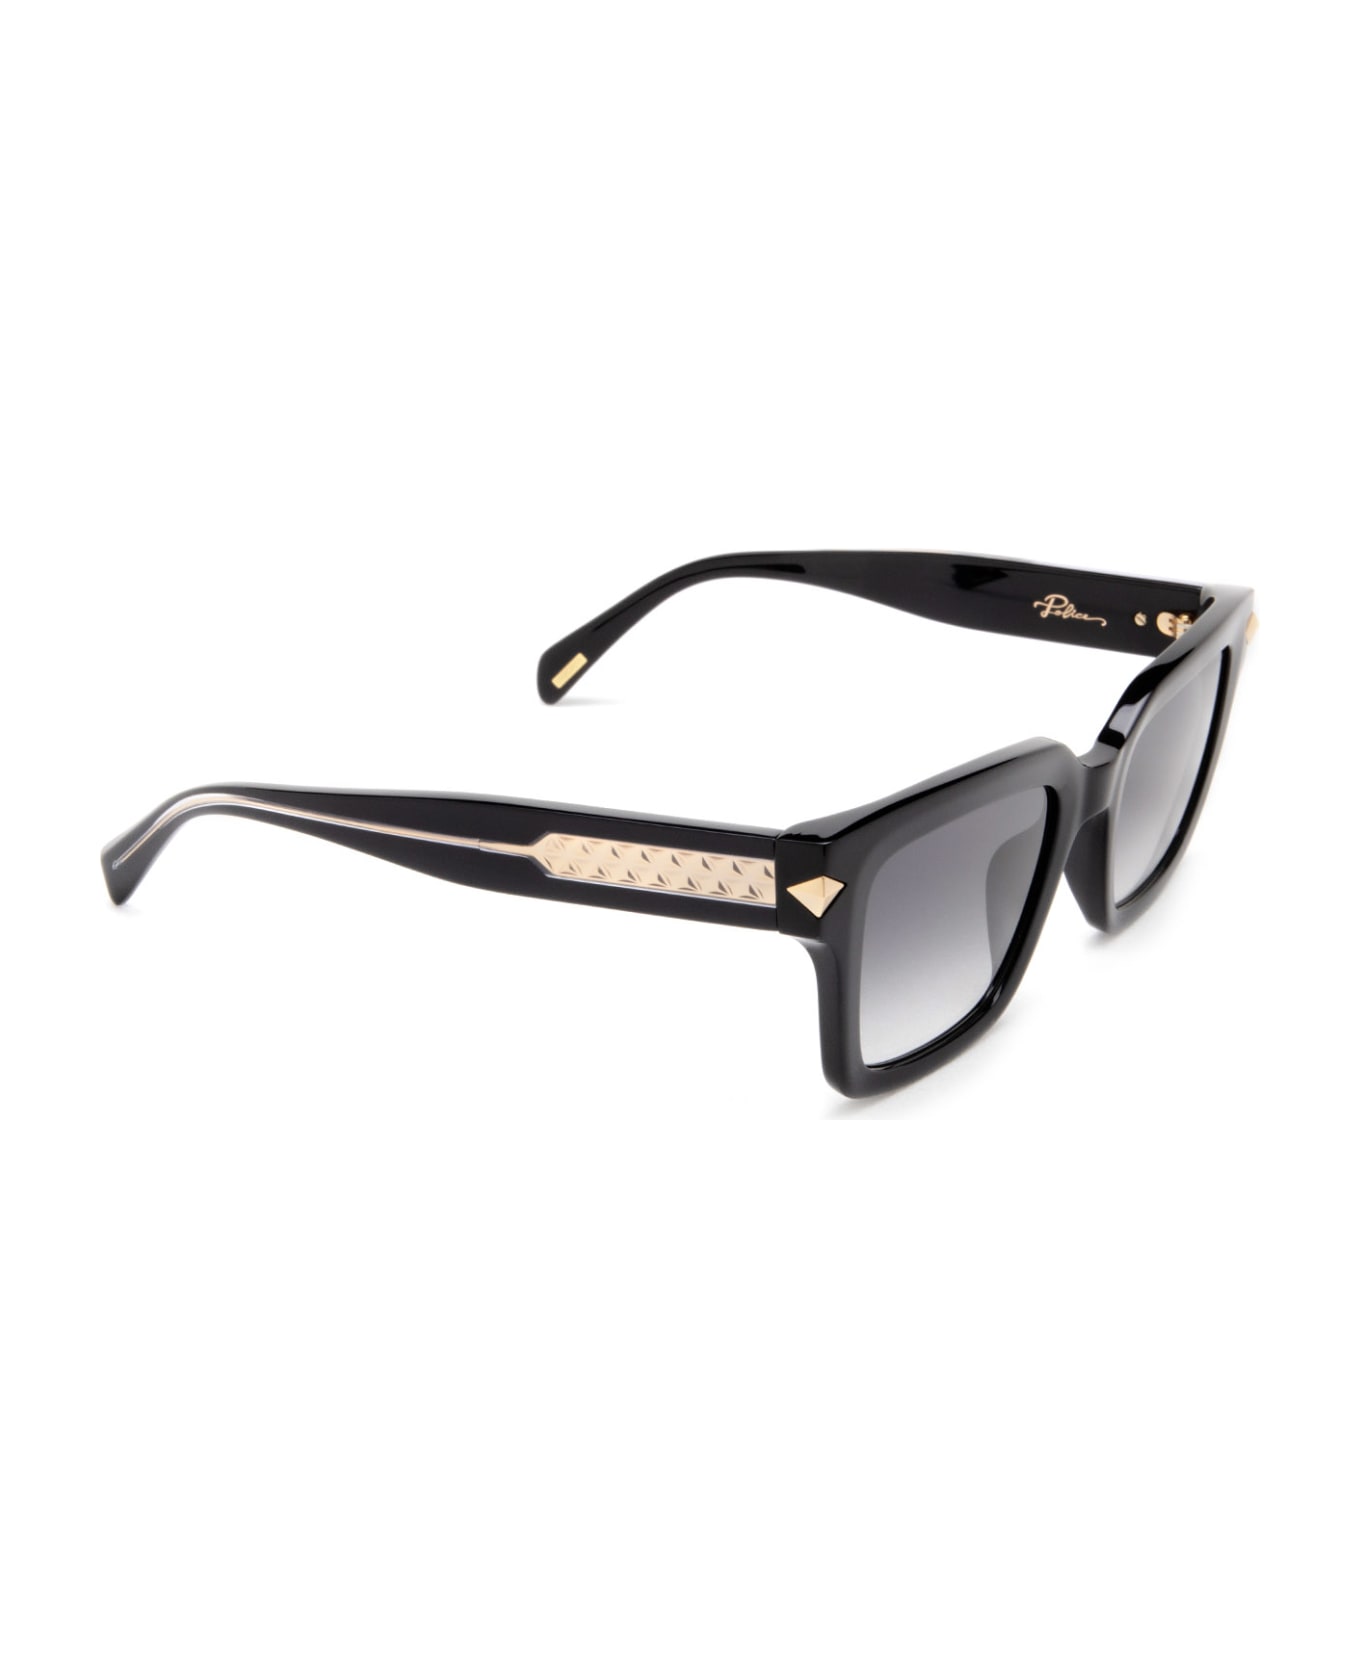 Police Splf32 Black Sunglasses - Black